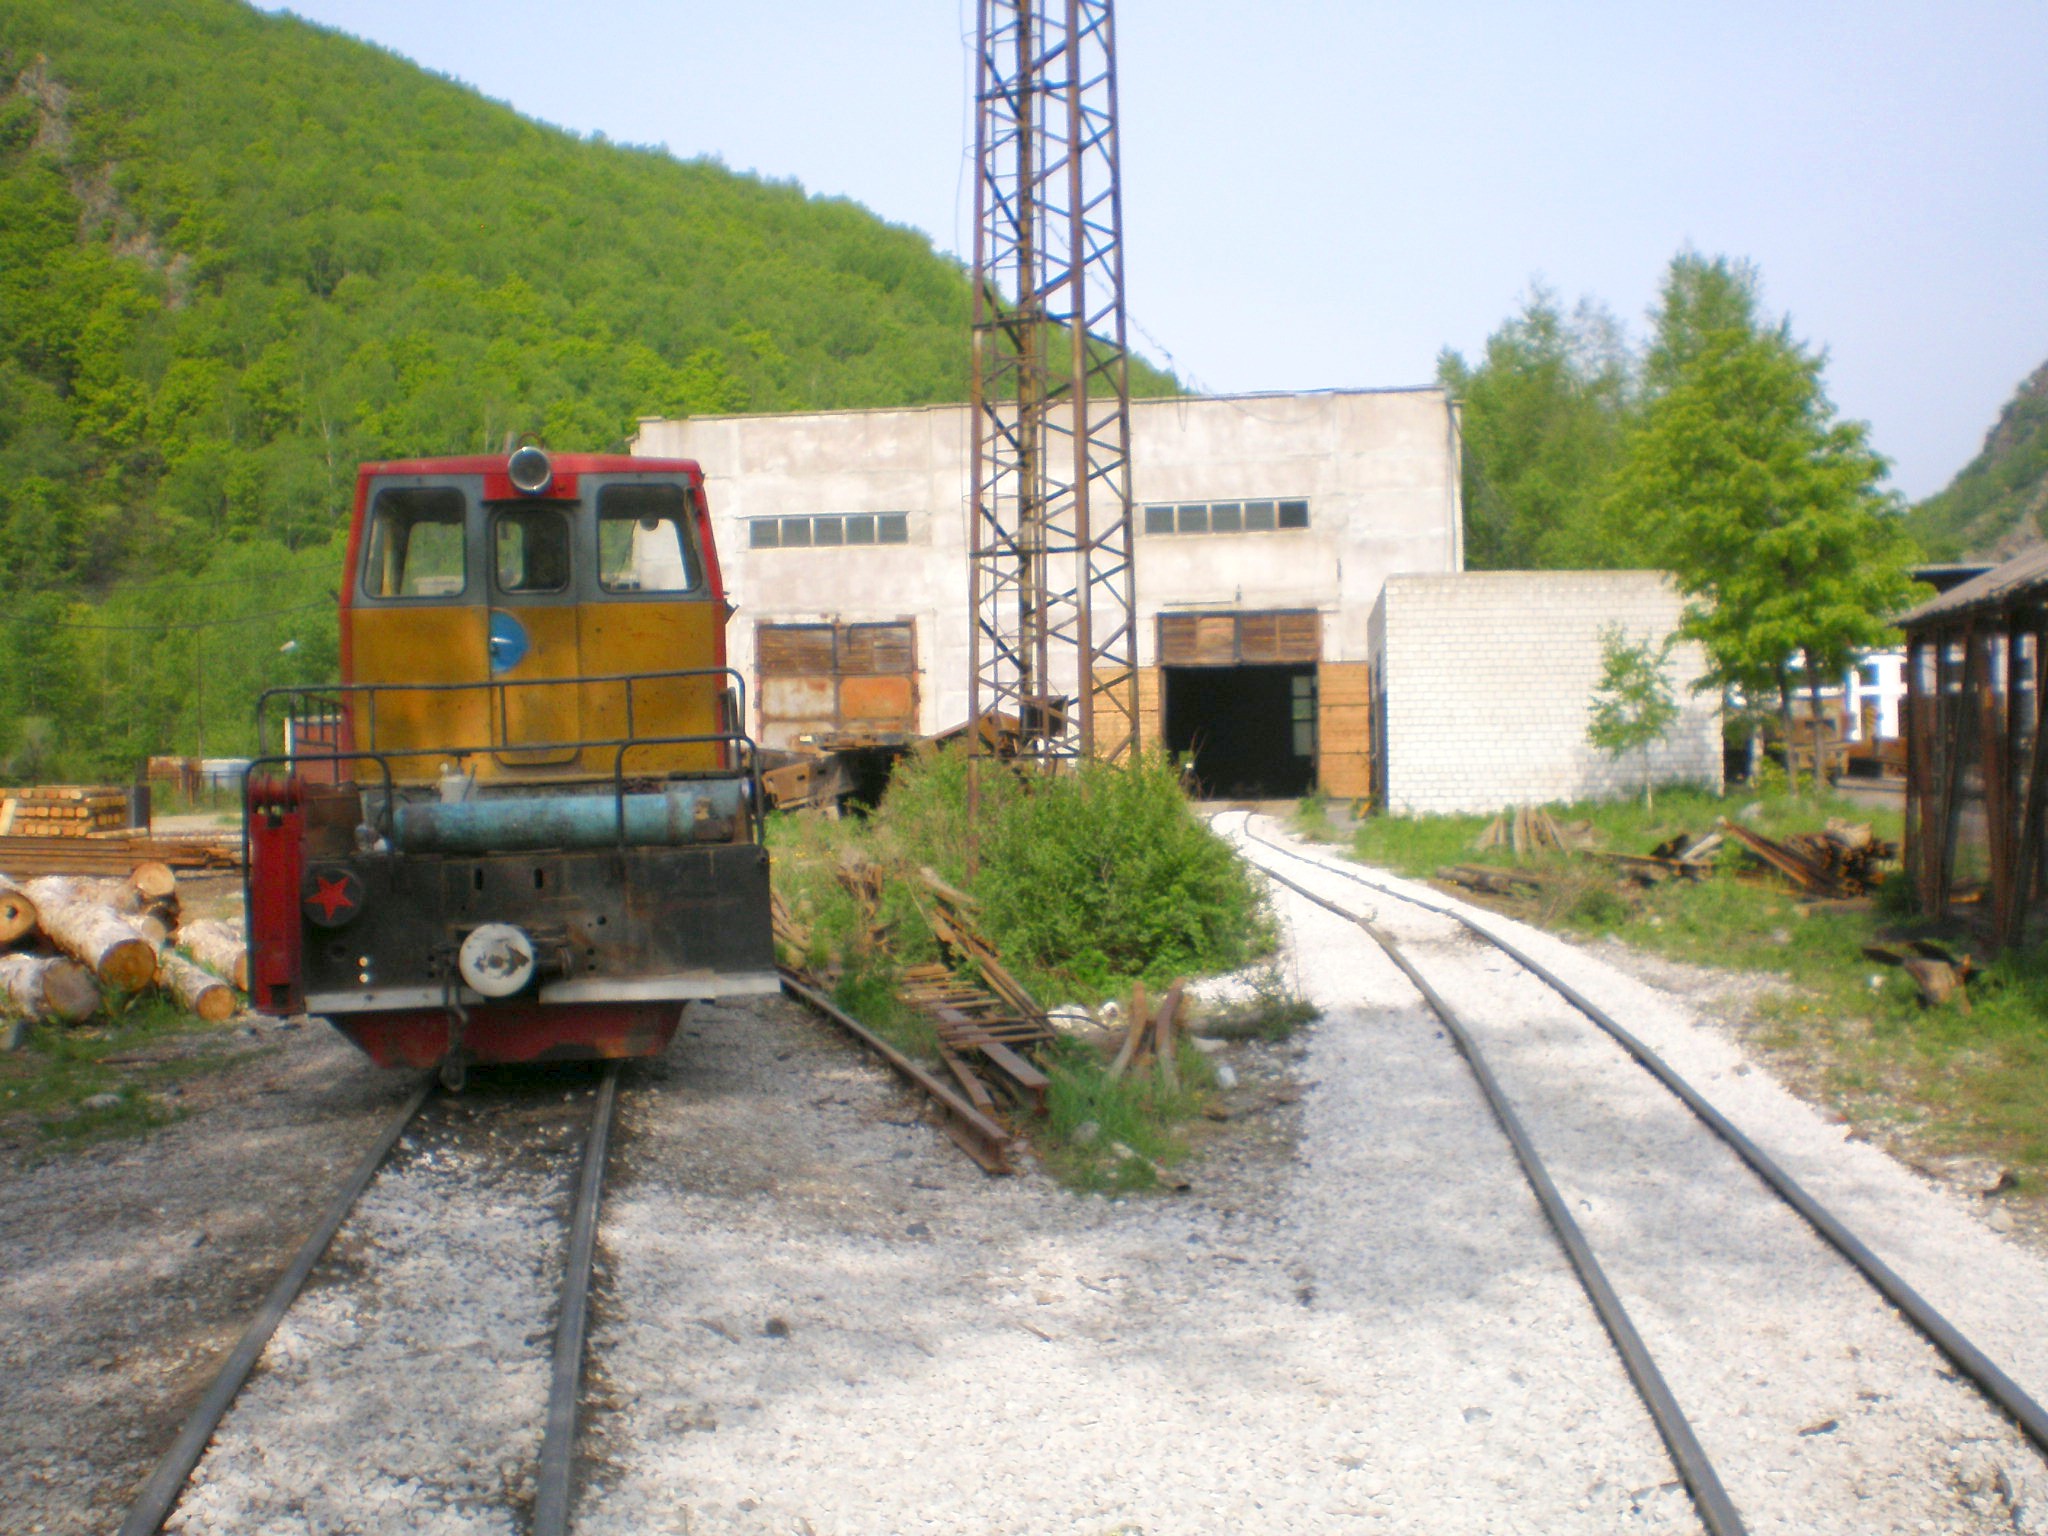 Тетюхинская узкоколейная железная дорога  —  фотографии, сделанные в 2008 году (часть 13)